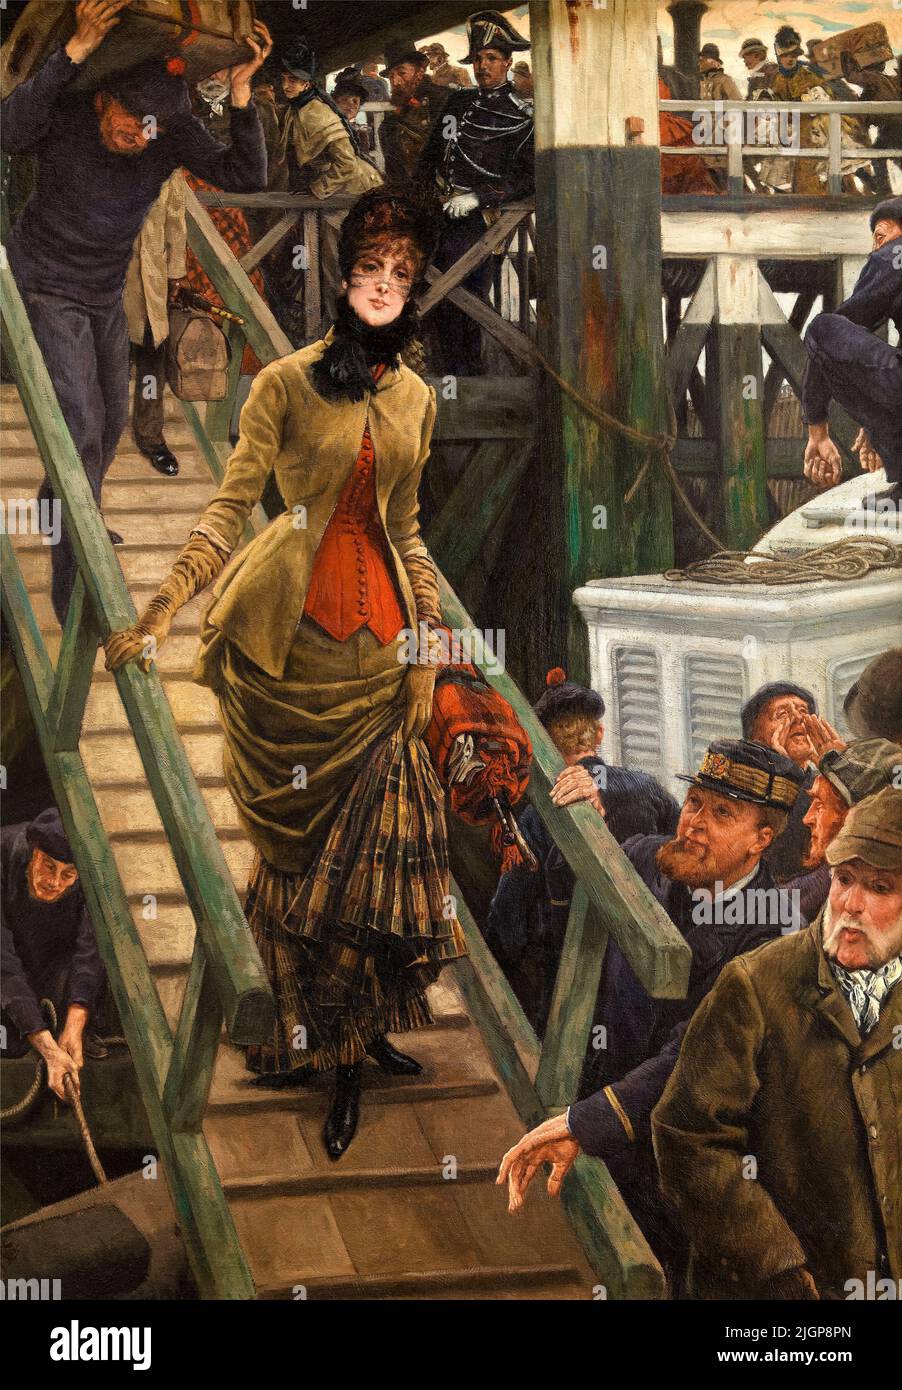 James Tissot, embarquement à Calais, peinture à l'huile sur toile, 1883-1885 Banque D'Images